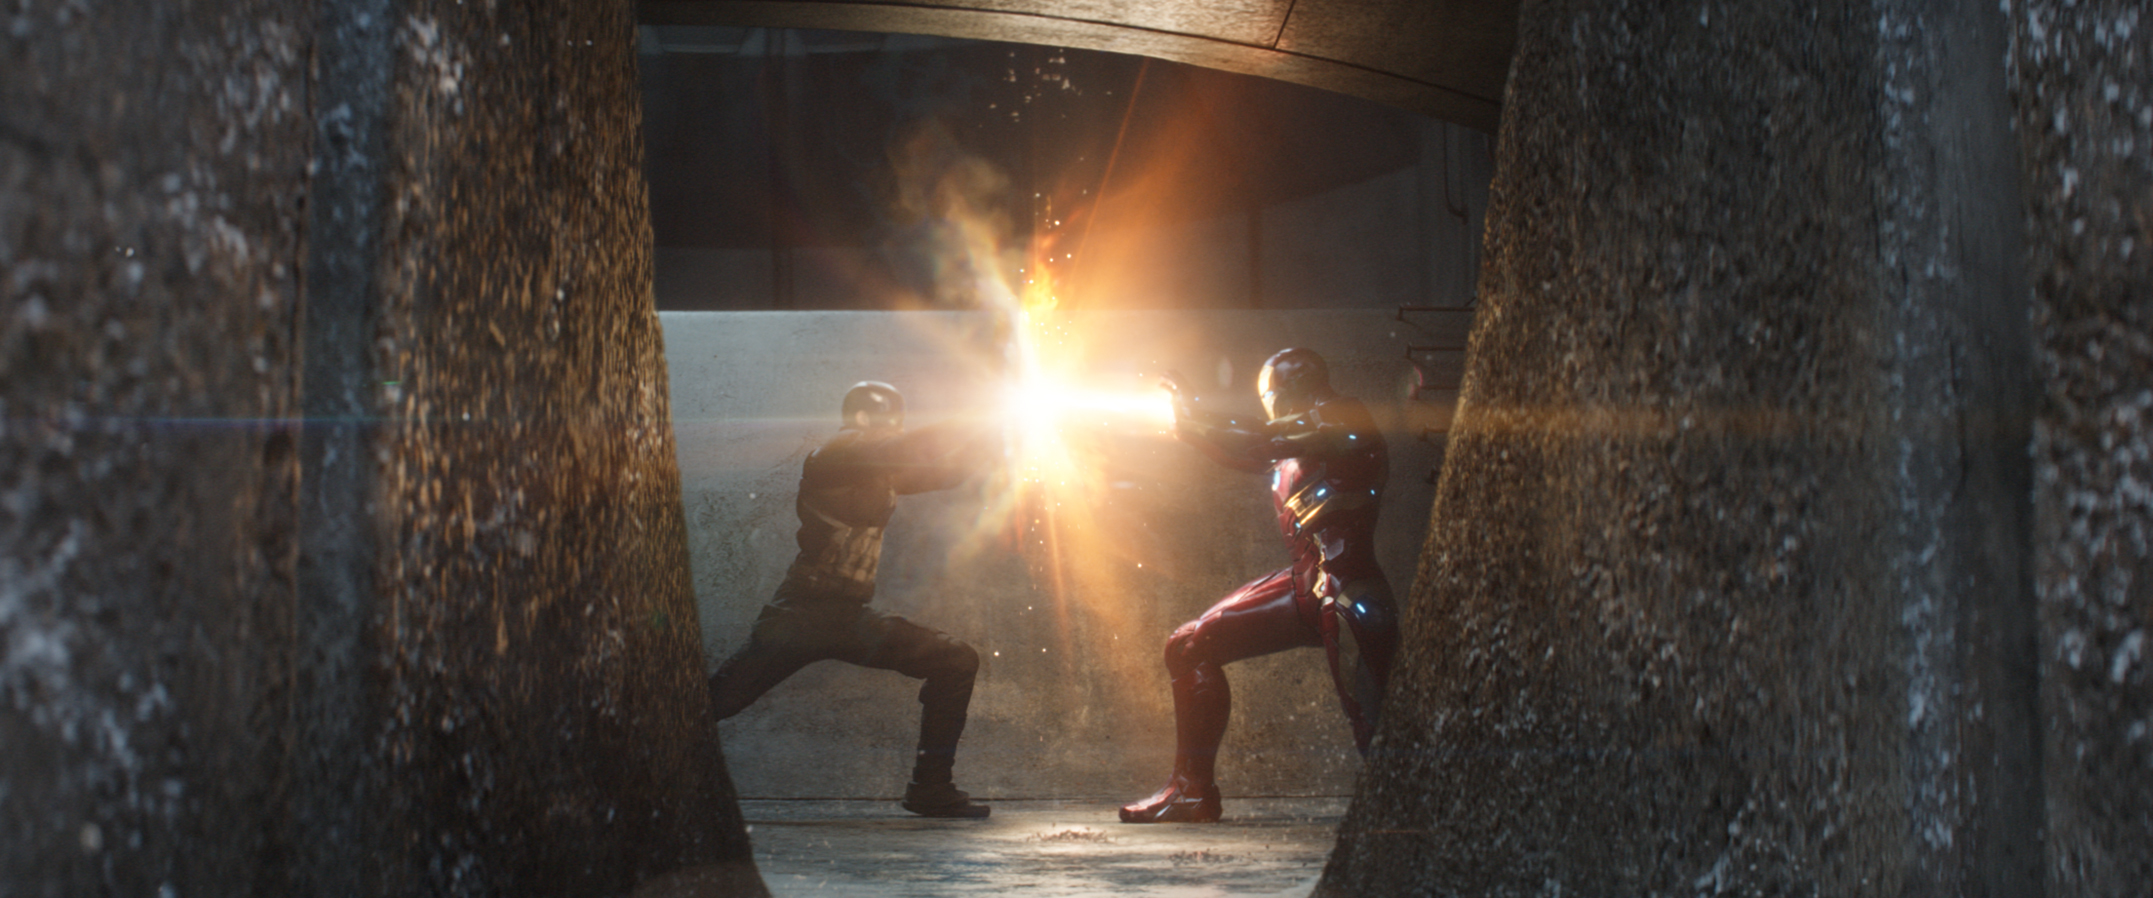 Chris Evans and Robert Downey Jr. in Captain America: Civil War